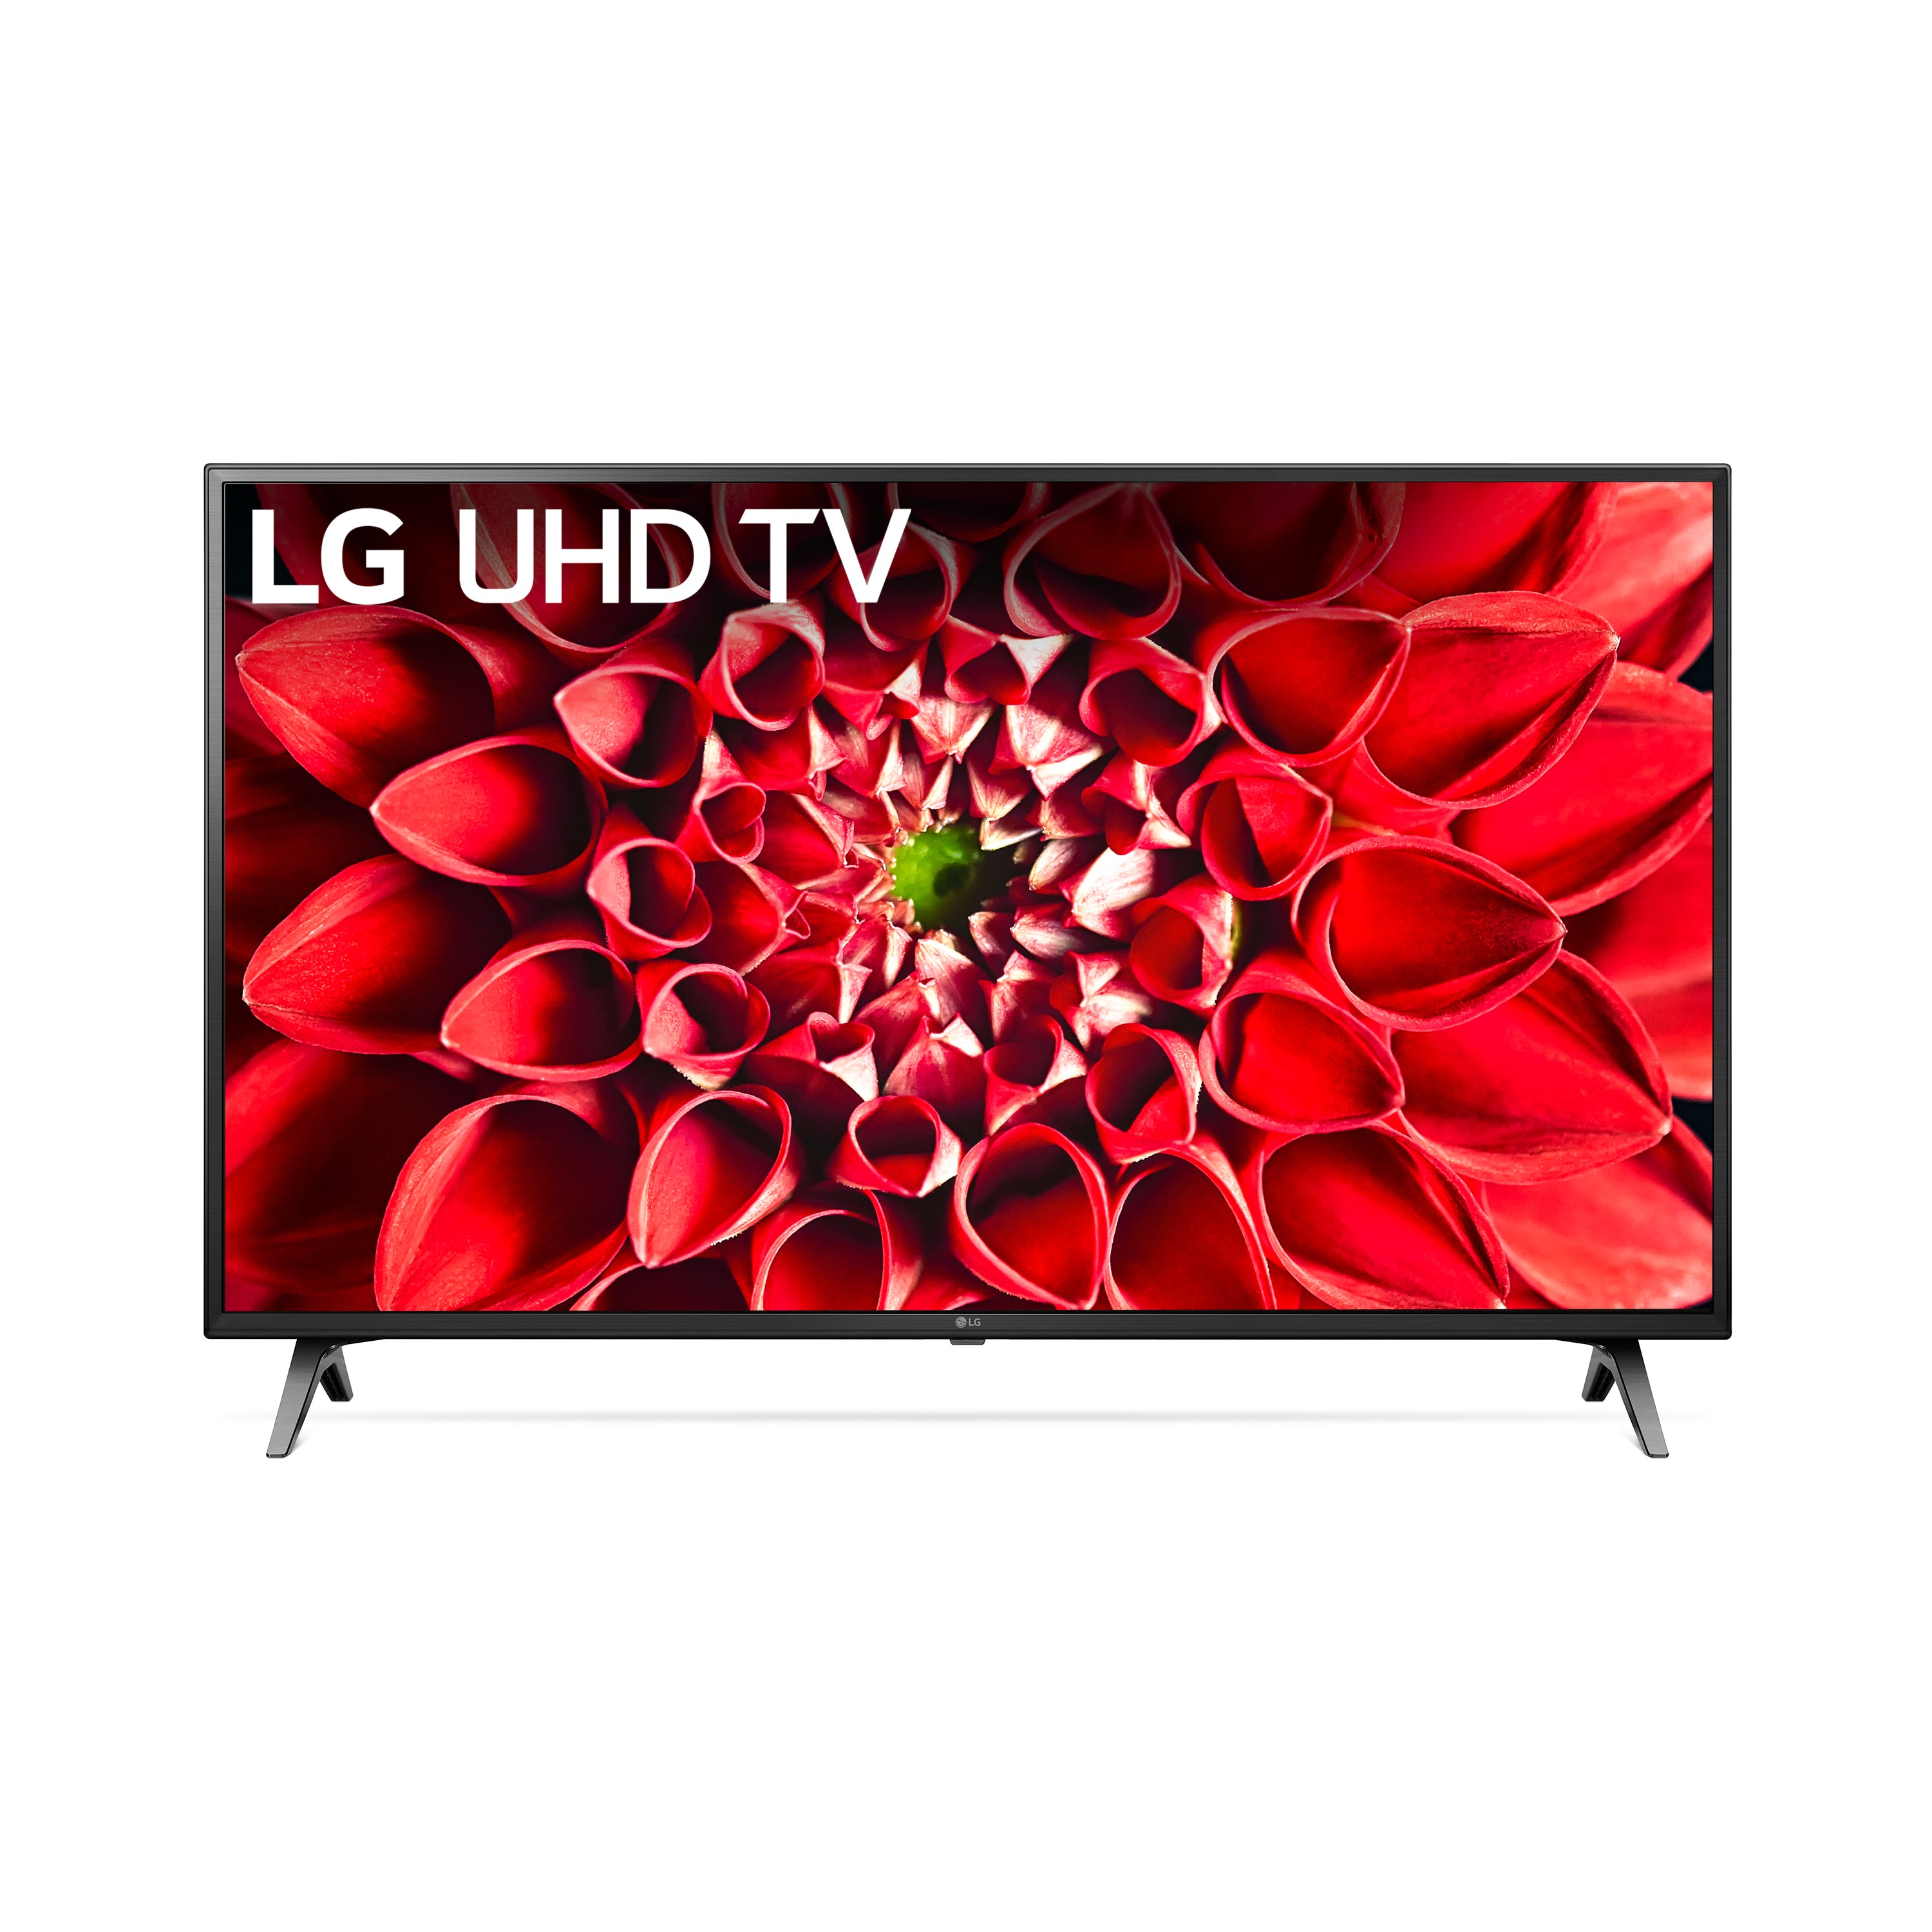 LG 55" Class 4K UHD 2160P Smart TV with HDR - 55UN7000PUC Model Mundo Click